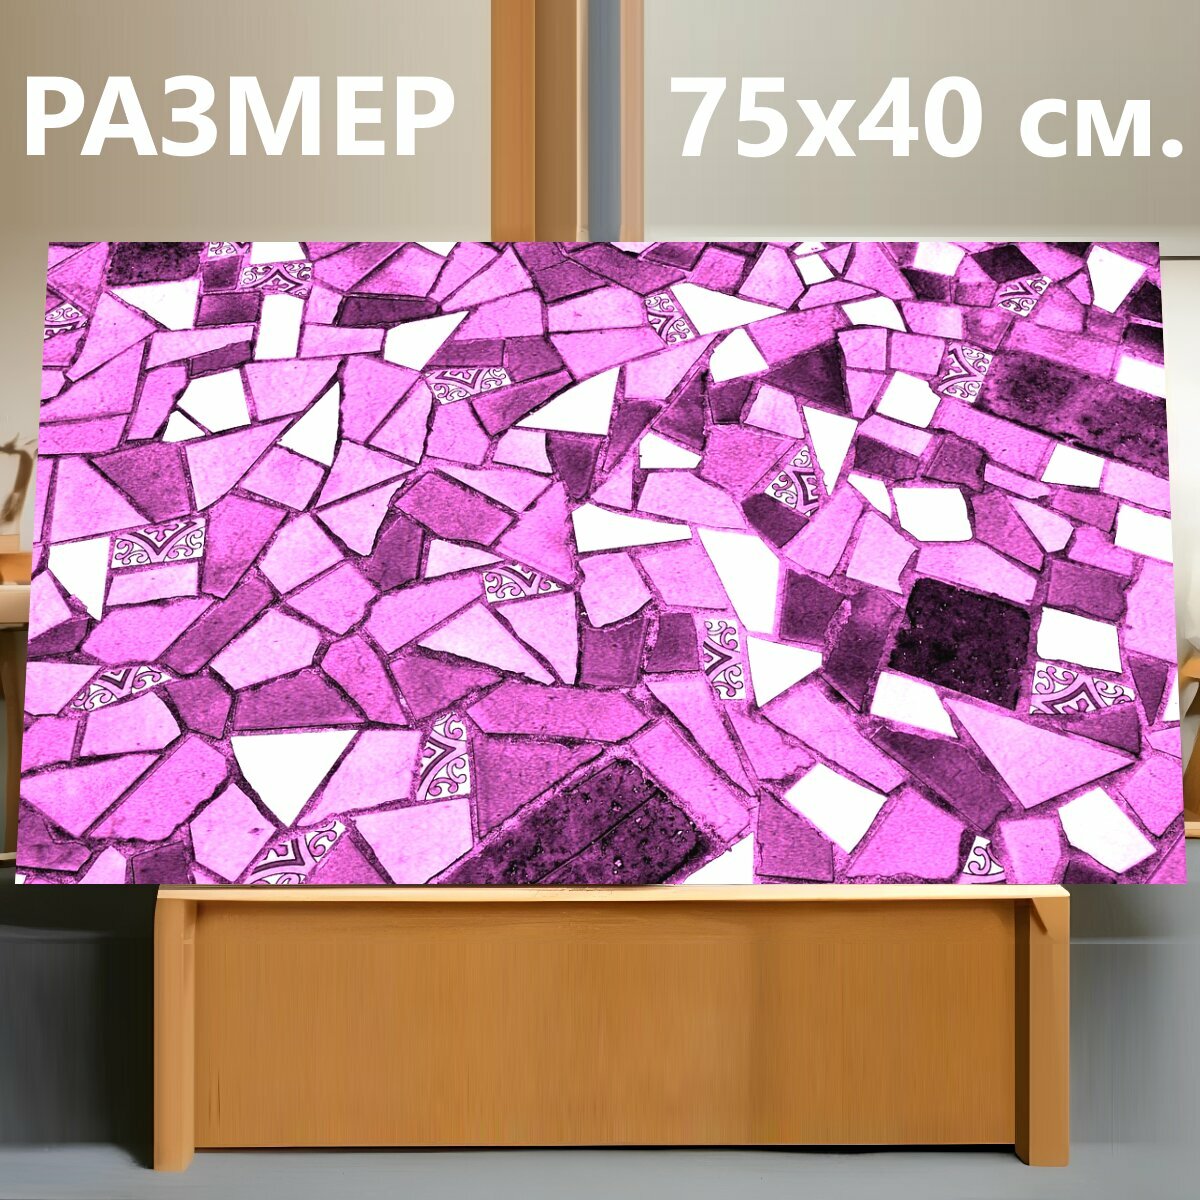 Картина на холсте "Керамика, керамическая плитка, керамическая напольная плитка" на подрамнике 75х40 см. для интерьера